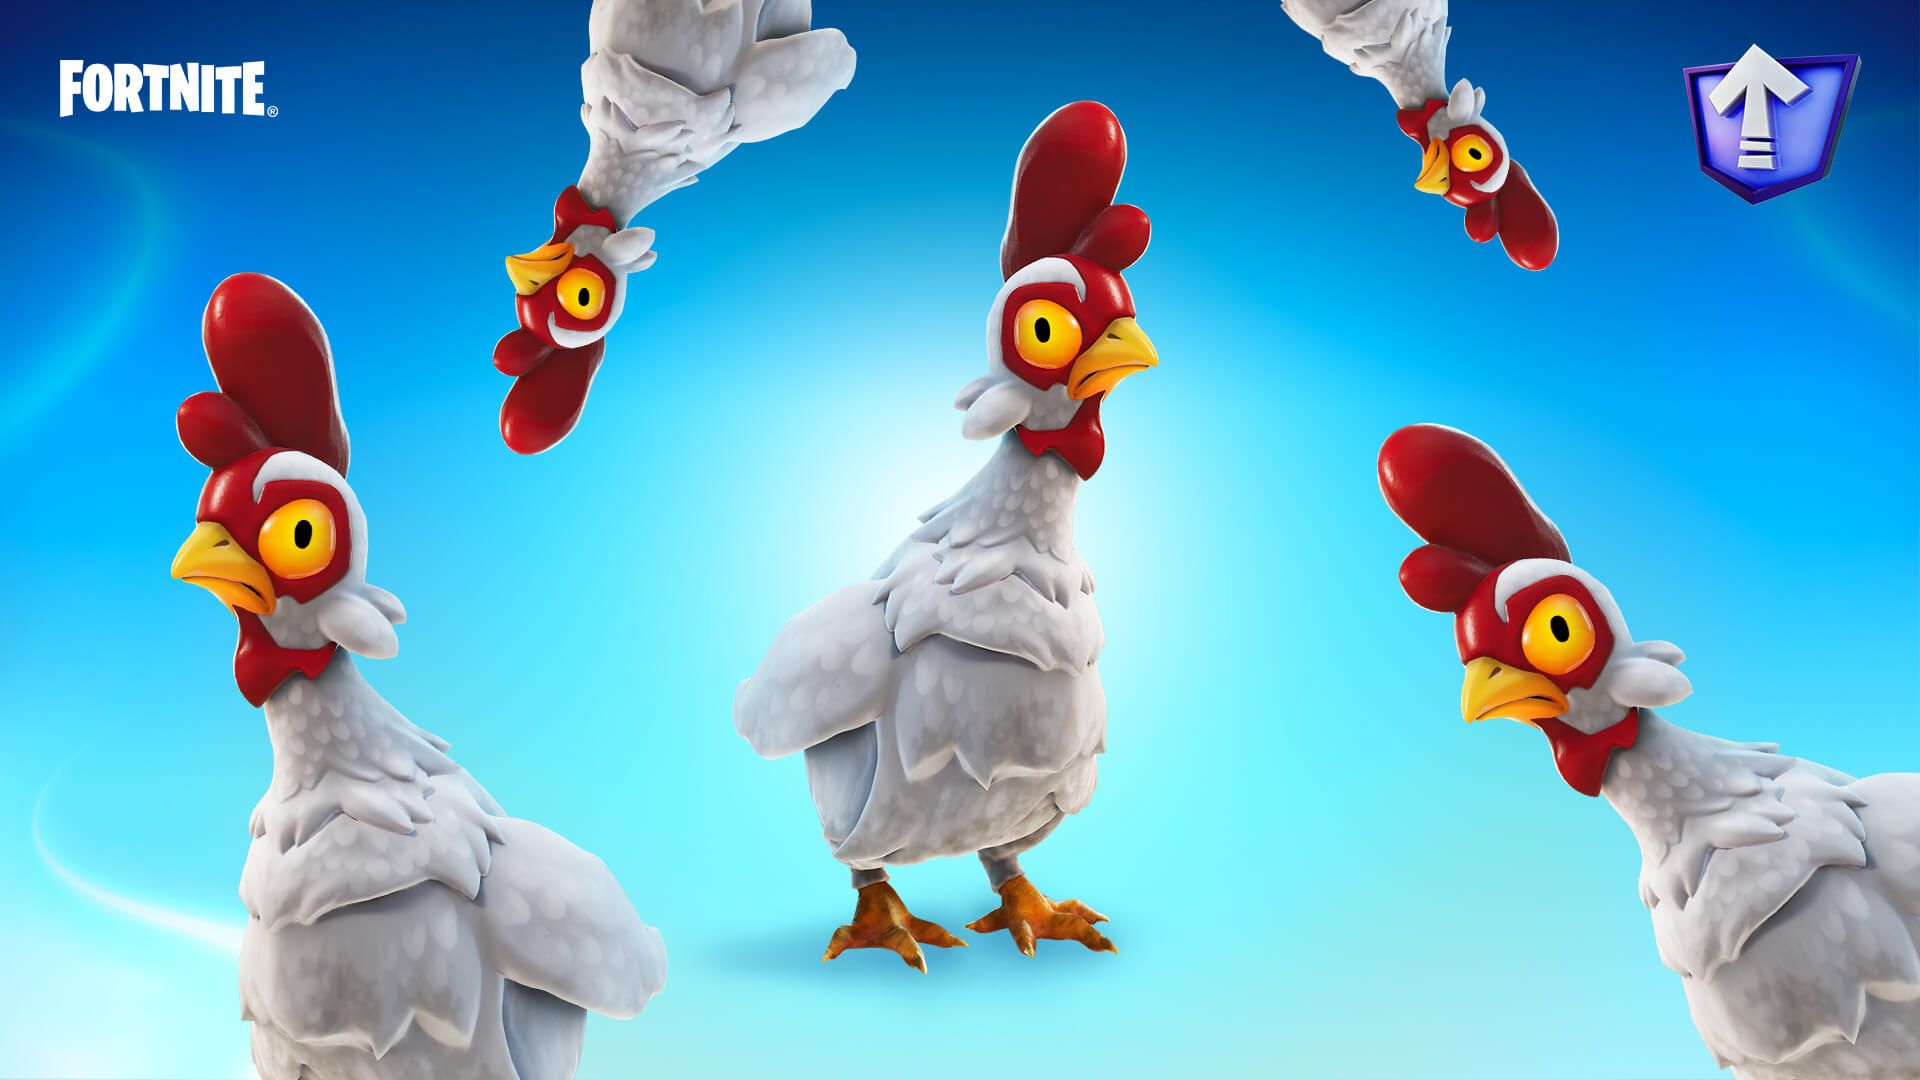 Art officiel de l'événement Fortnite Avian Ambush mettant en vedette des poulets Fortnite